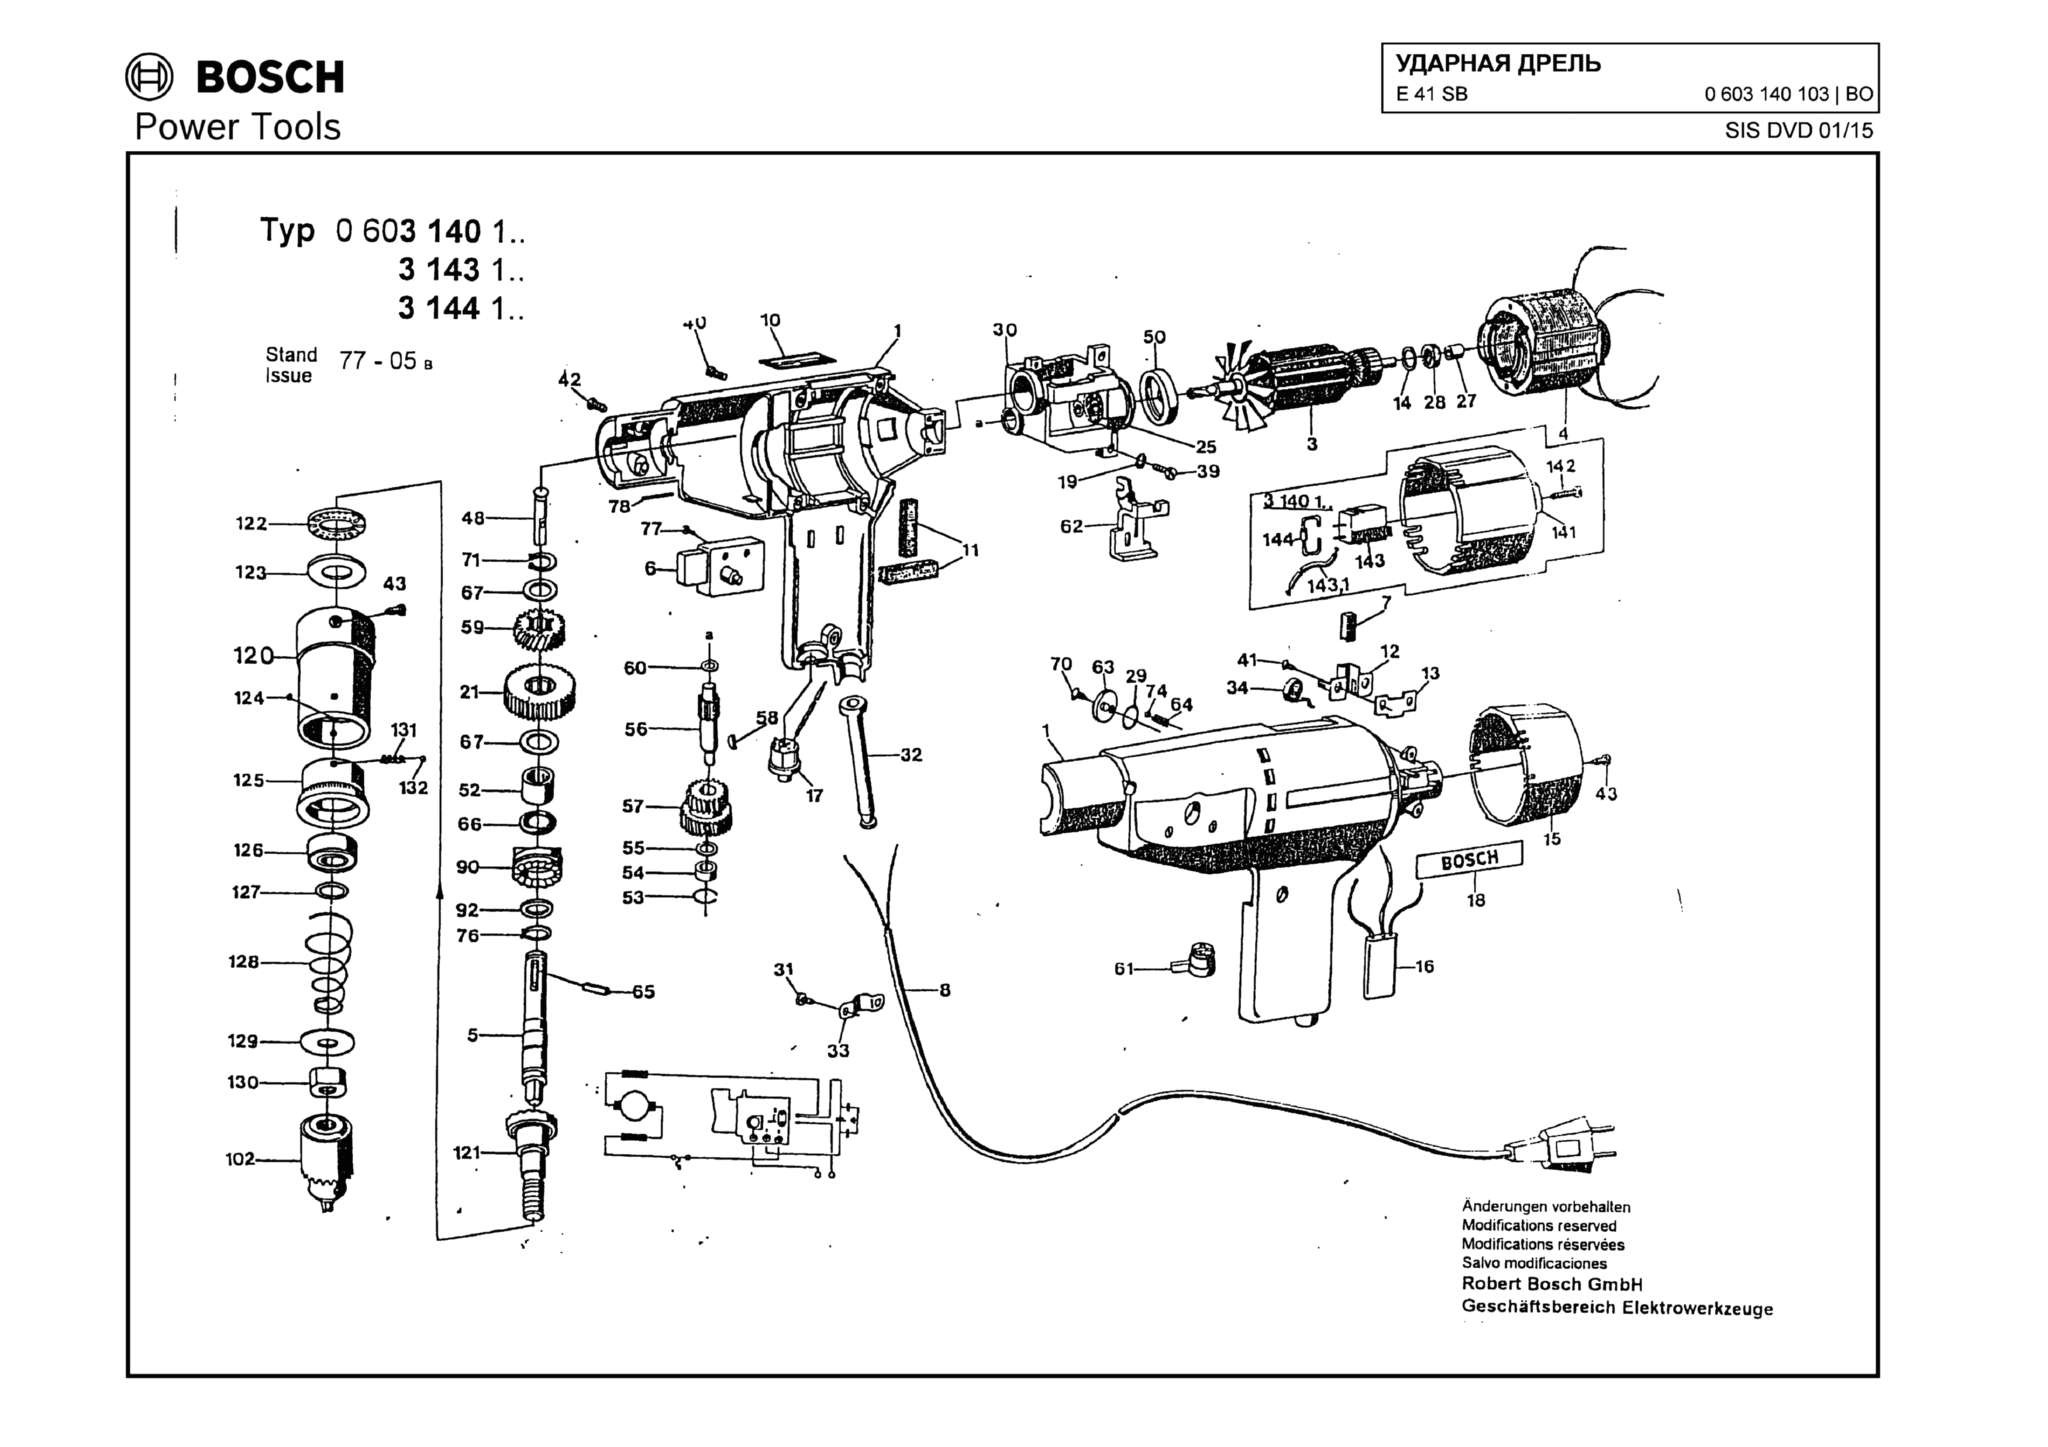 Запчасти, схема и деталировка Bosch E 41 SB (ТИП 0603140103)